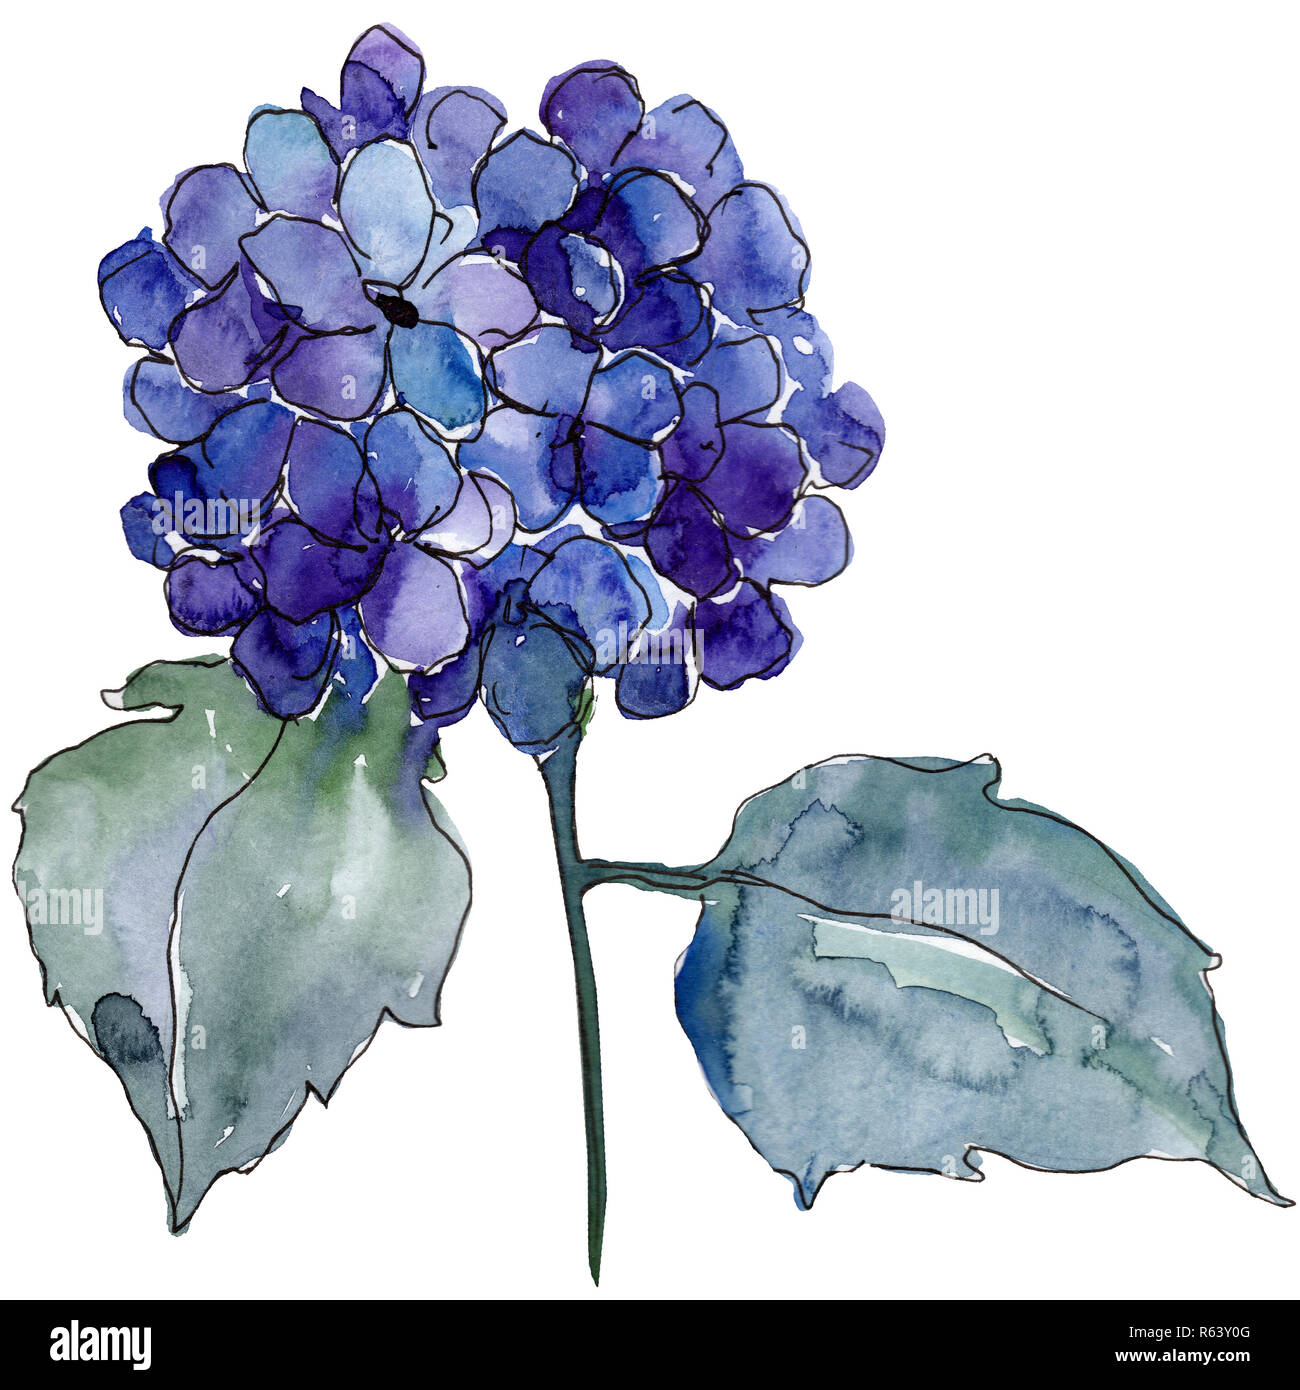 Hortensia bleu fleur avec des feuilles vertes. Hortensia isolés de l'élément d'illustration. Jeu de fond à l'aquarelle. Banque D'Images